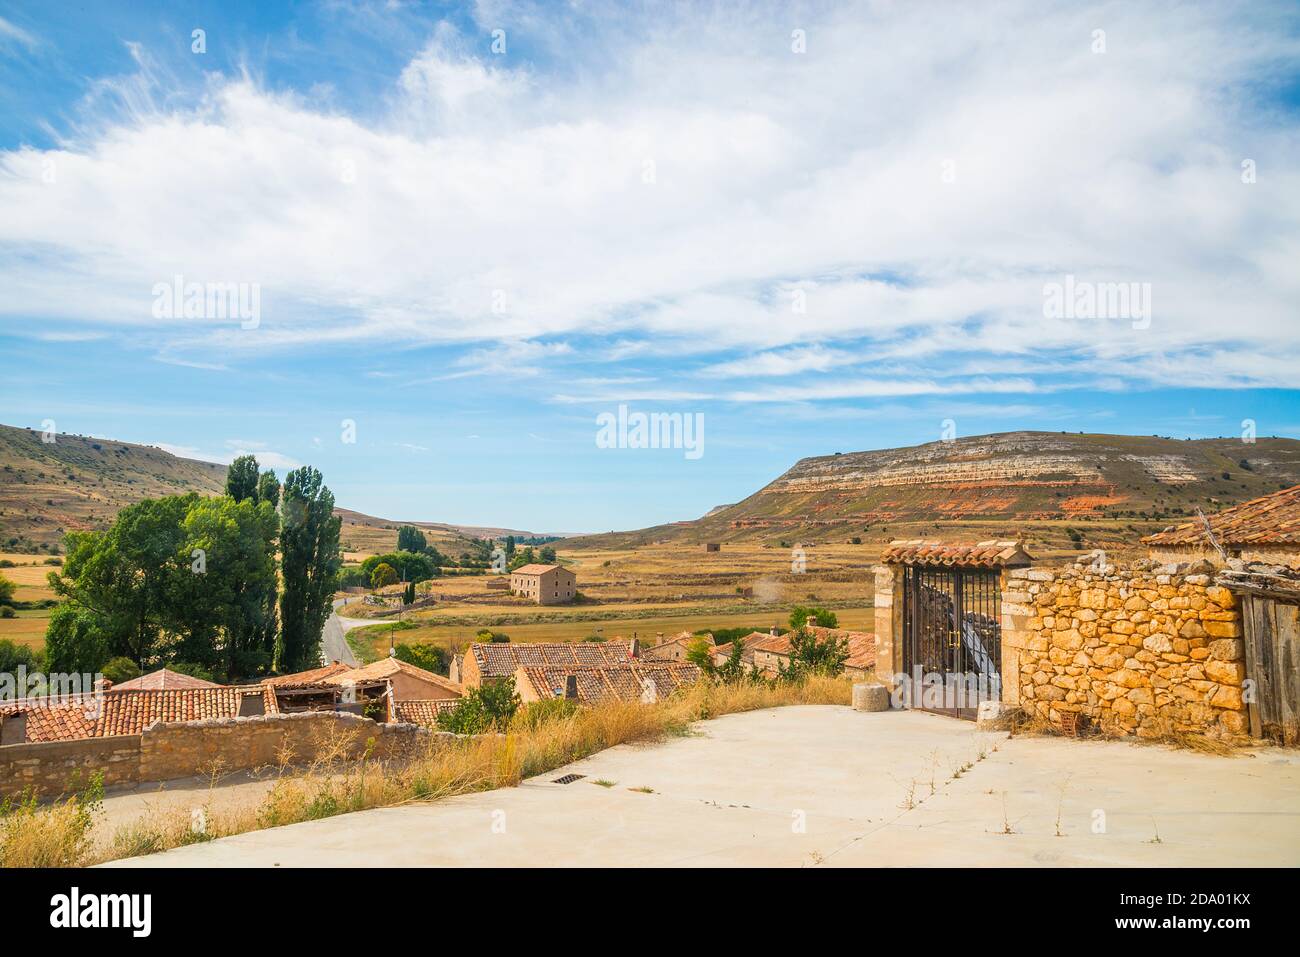 Village and landscape. Bordecorex, Soria province, Castilla Leon, Spain. Stock Photo